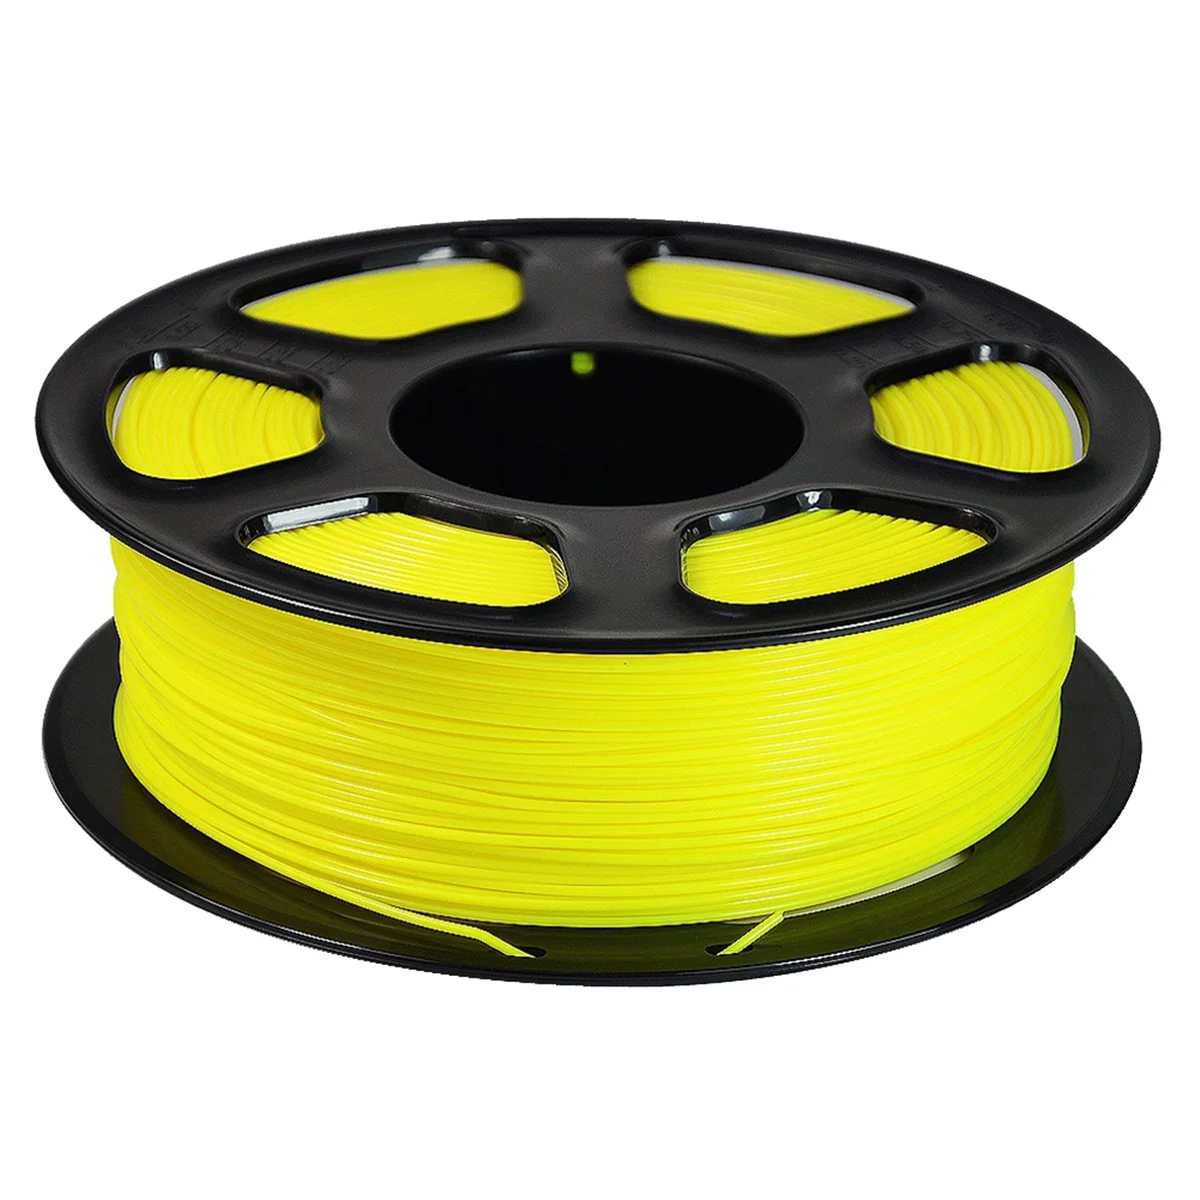 

PLA 3D Printer Filament, Neatly Wound PLA Filament 1.75mm Fit Most FDM 3D Printers,1KG Spool PLA Filament Yellow